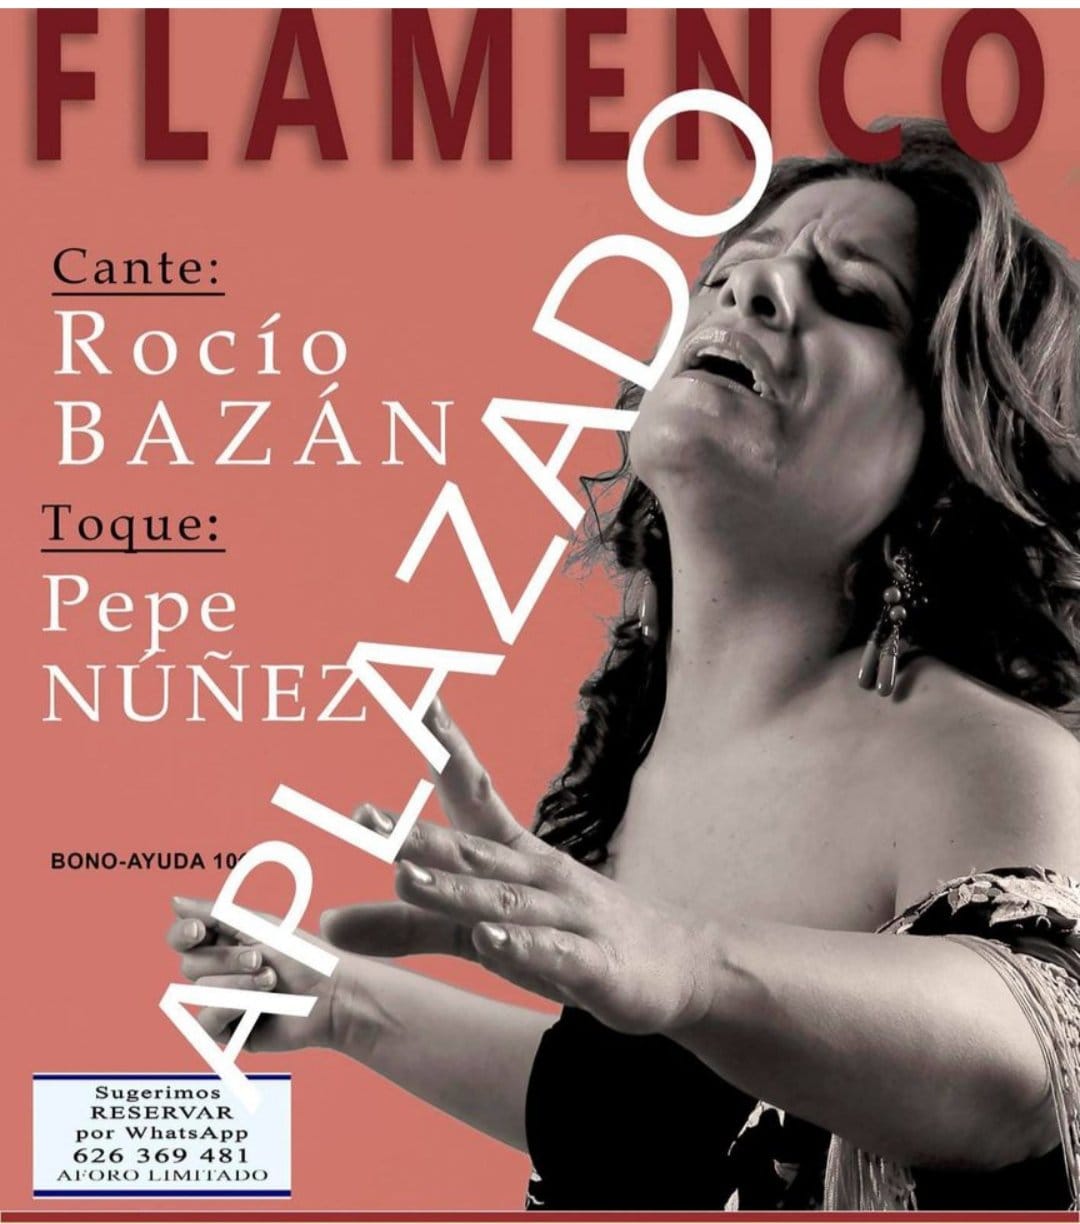 La Libre Flamenco en Leganés